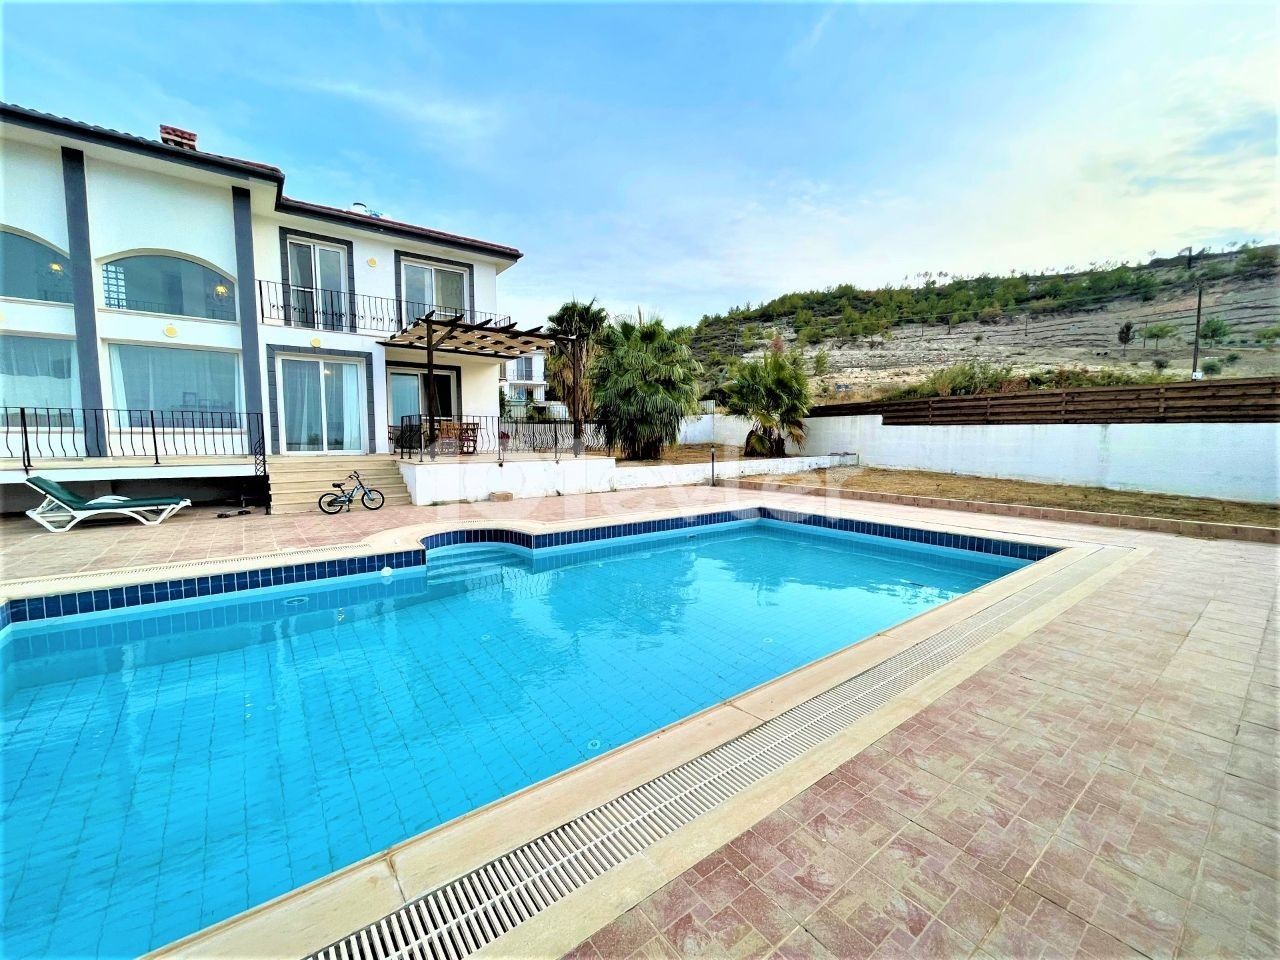 Villa mit Meerblick zur Miete in Kyrenia Karsiyaka in herrlicher Lage